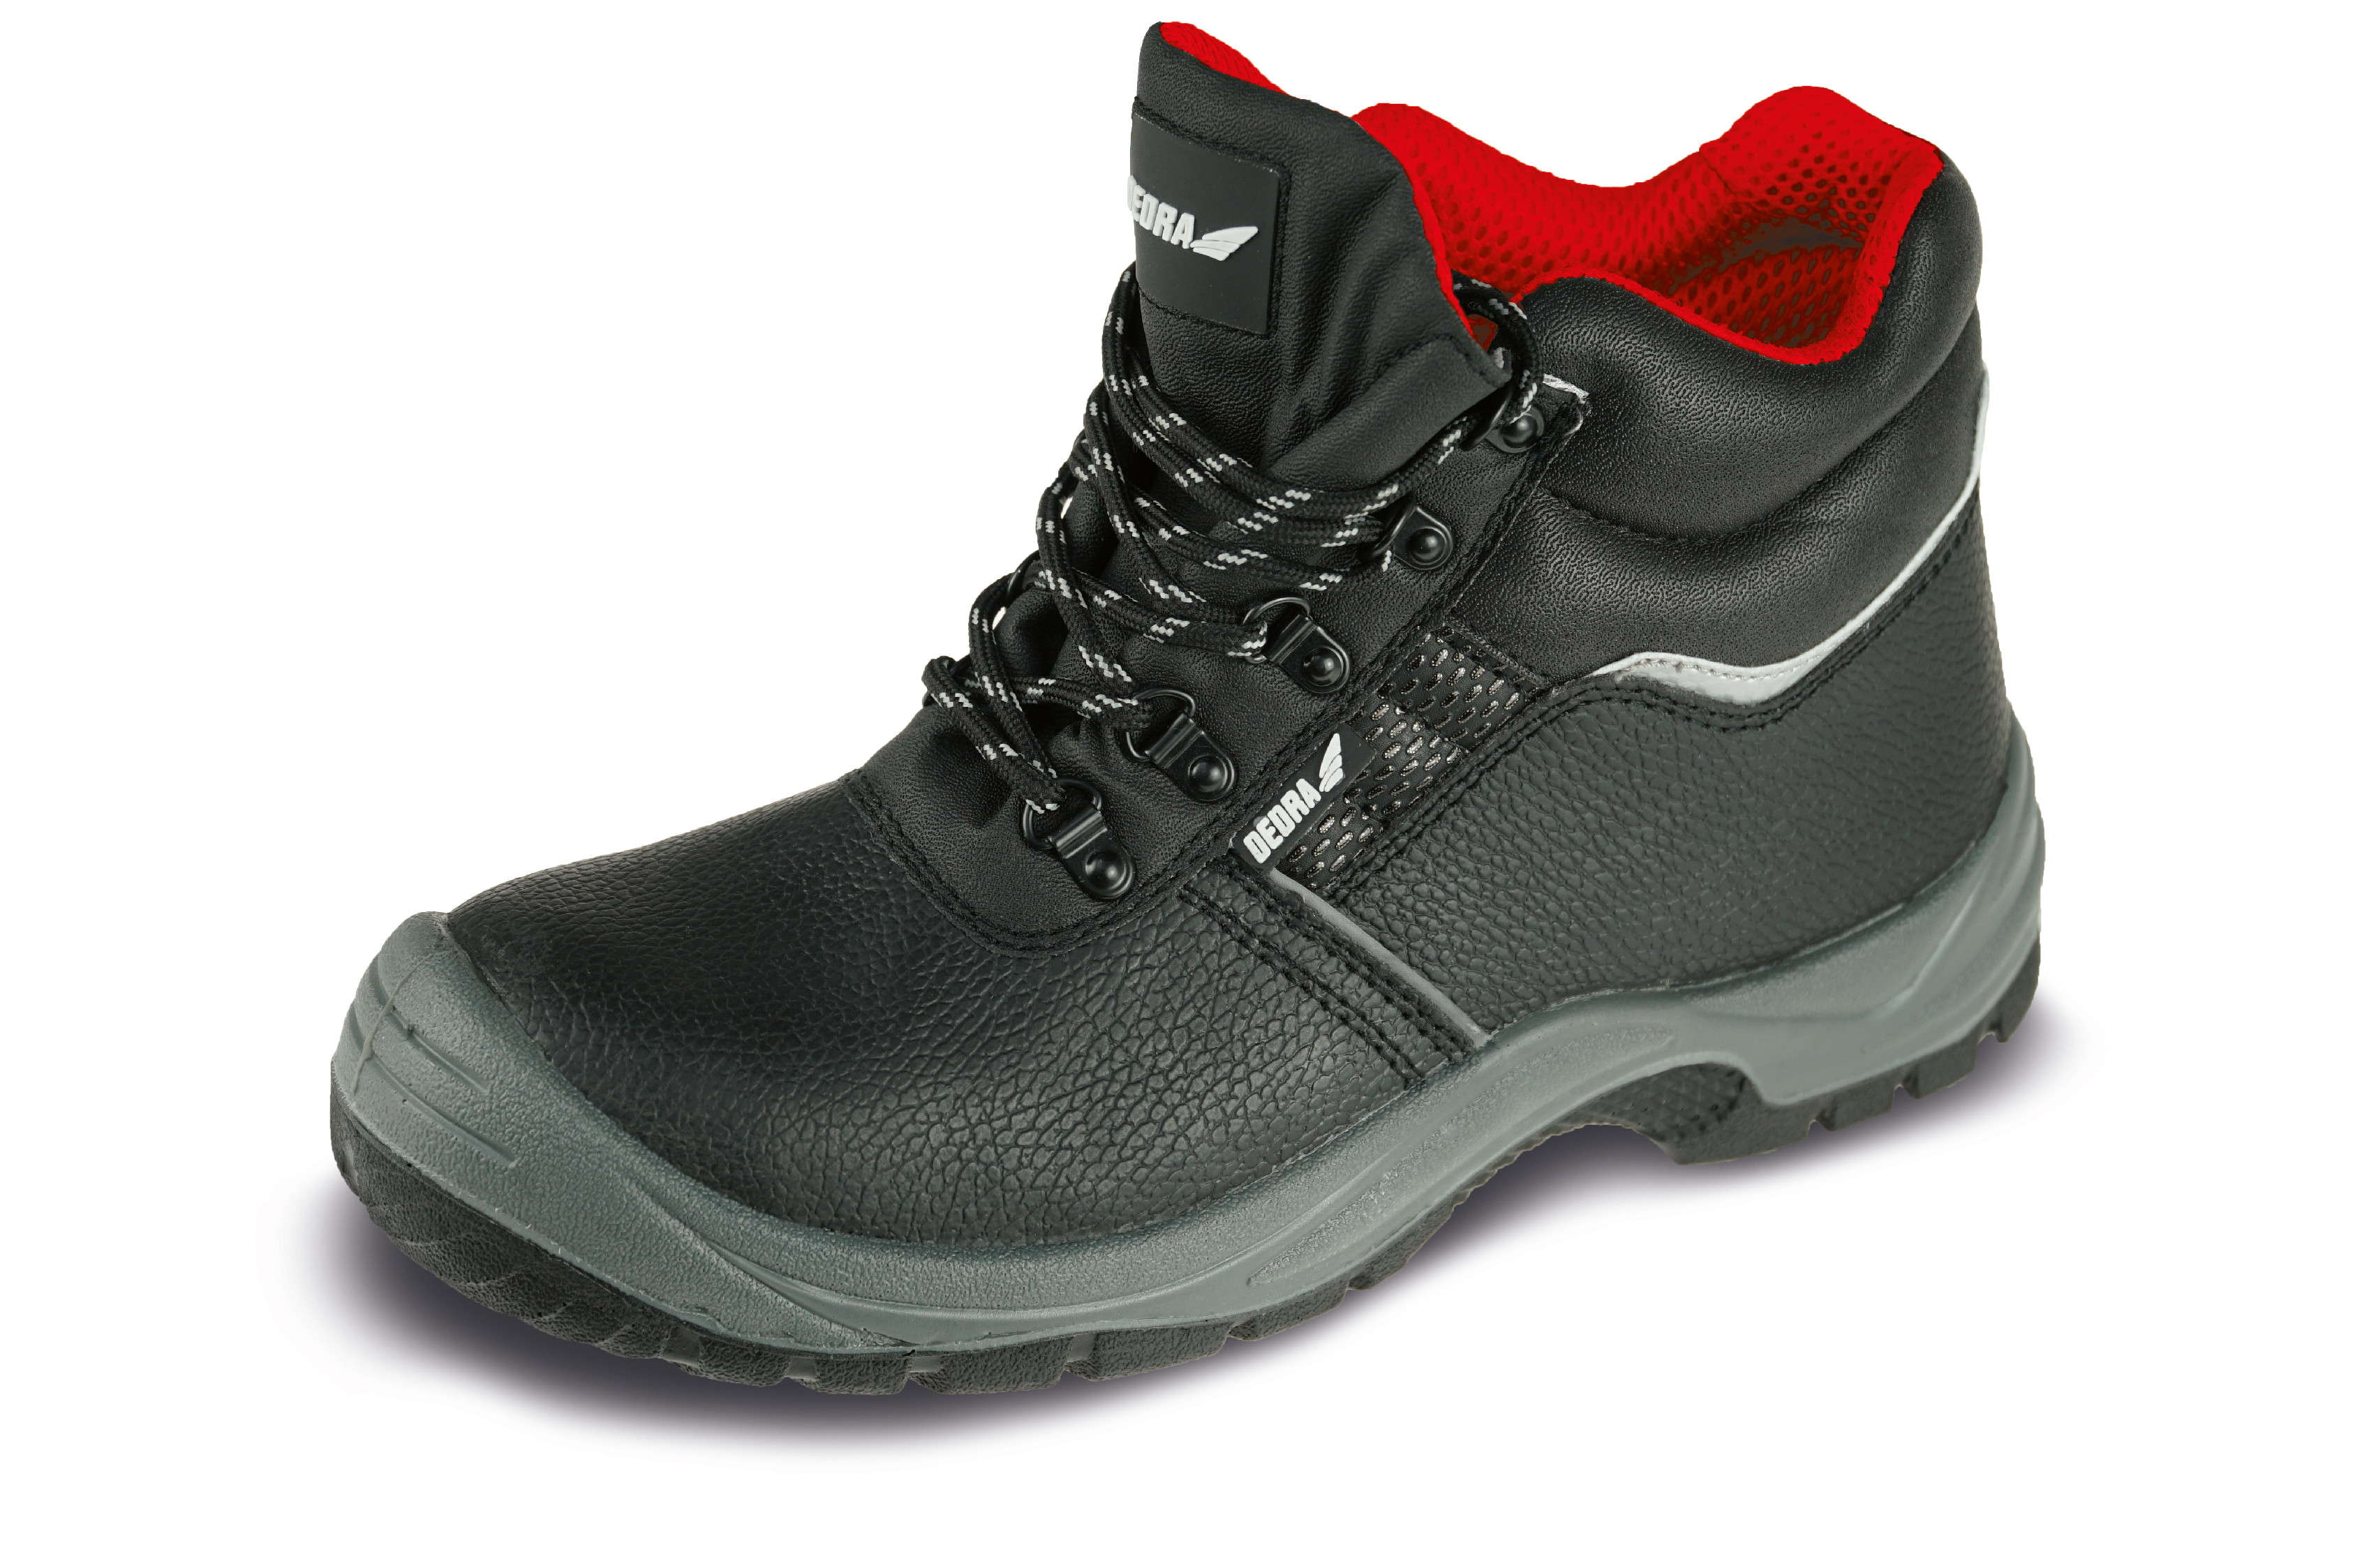 Bezpečnostní boty T1AW, kožené, velikost: 44, kat. S3 SRC DEDRA BH9T1AW-44 + Dárek, servis bez starostí v hodnotě 300Kč